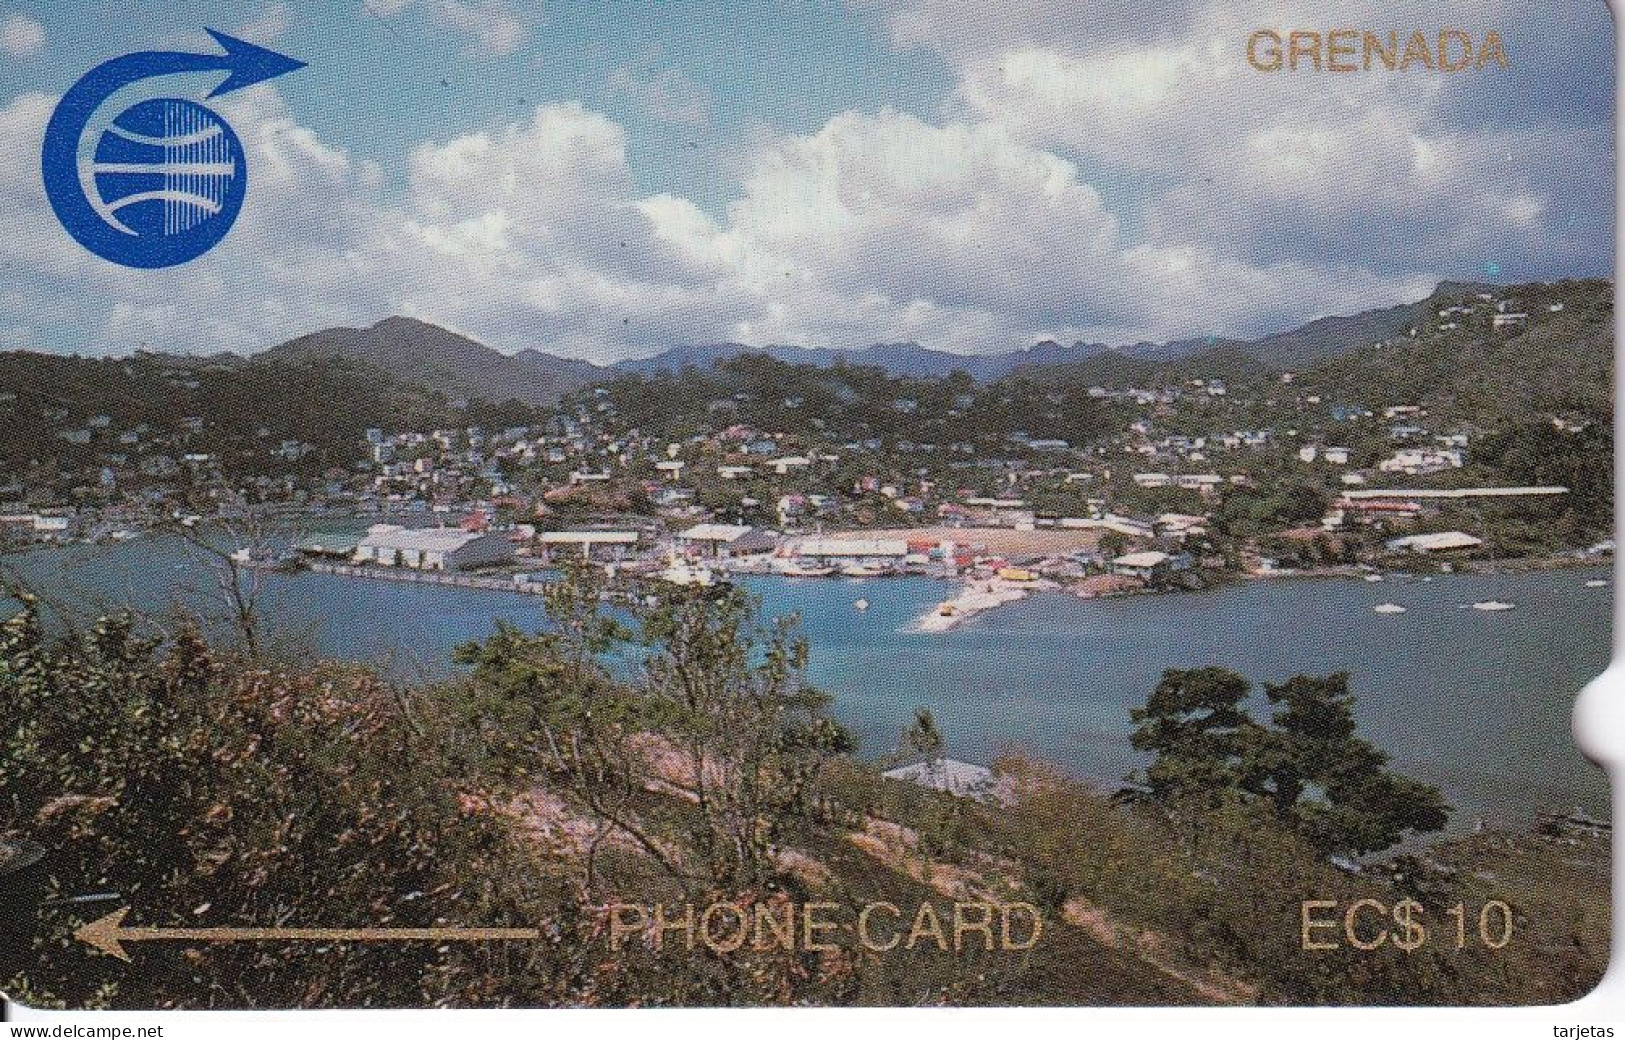 TARJETA DE GRENADA DE UN PAISAJE - CIUDAD (1CGRB) - Grenada (Granada)